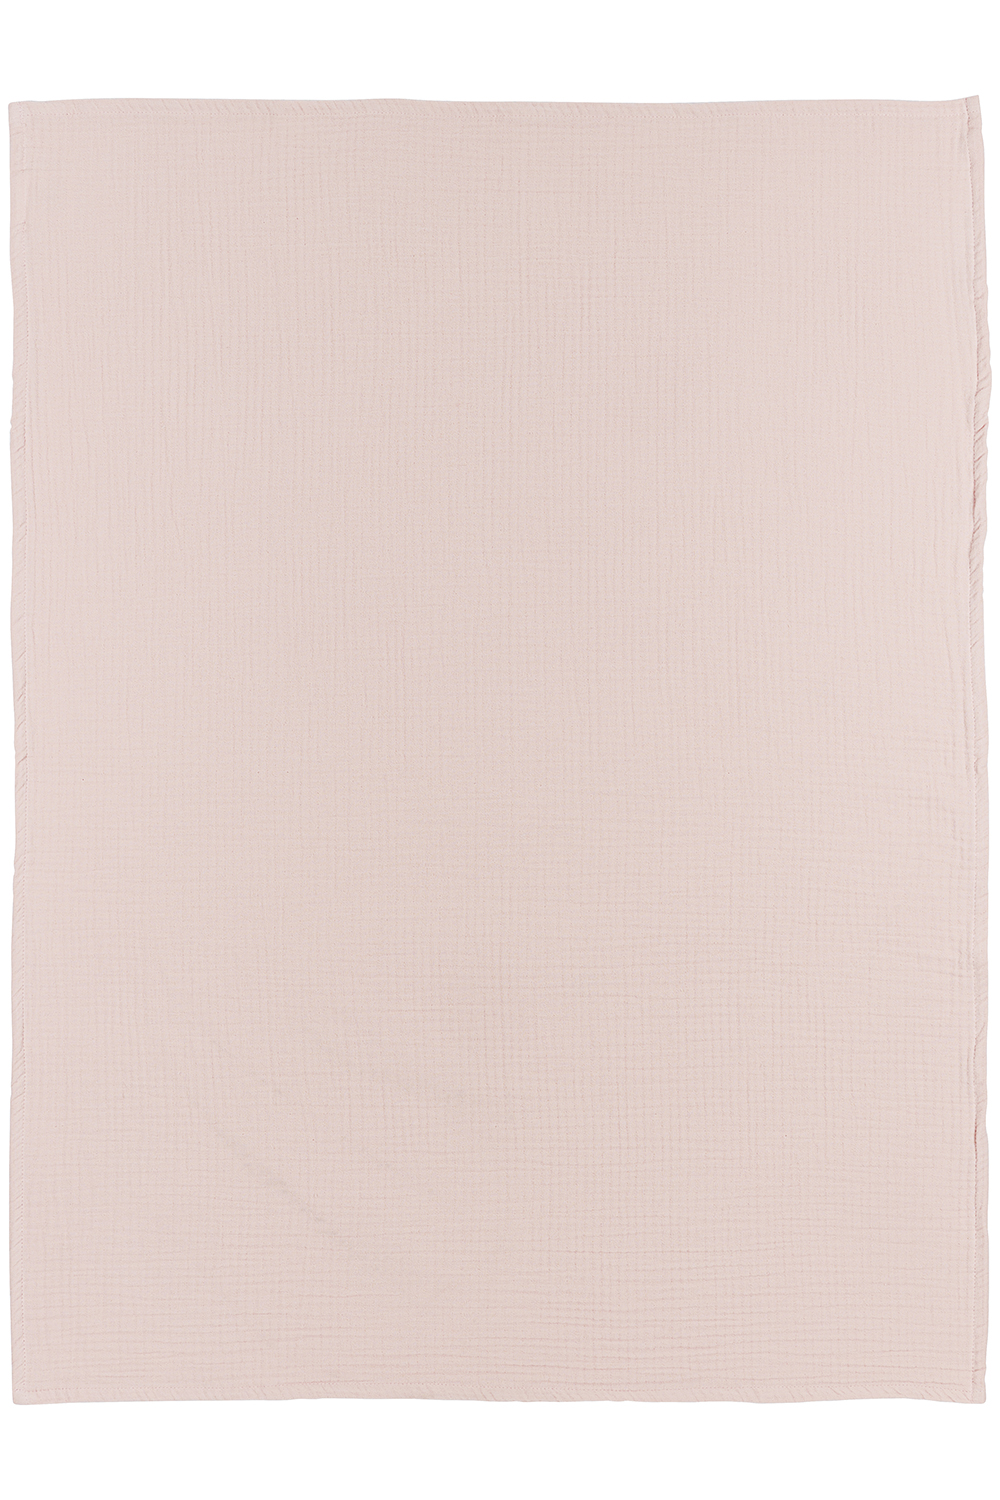 Ledikant laken pre-washed hydrofiel Uni - soft pink - 100x150cm